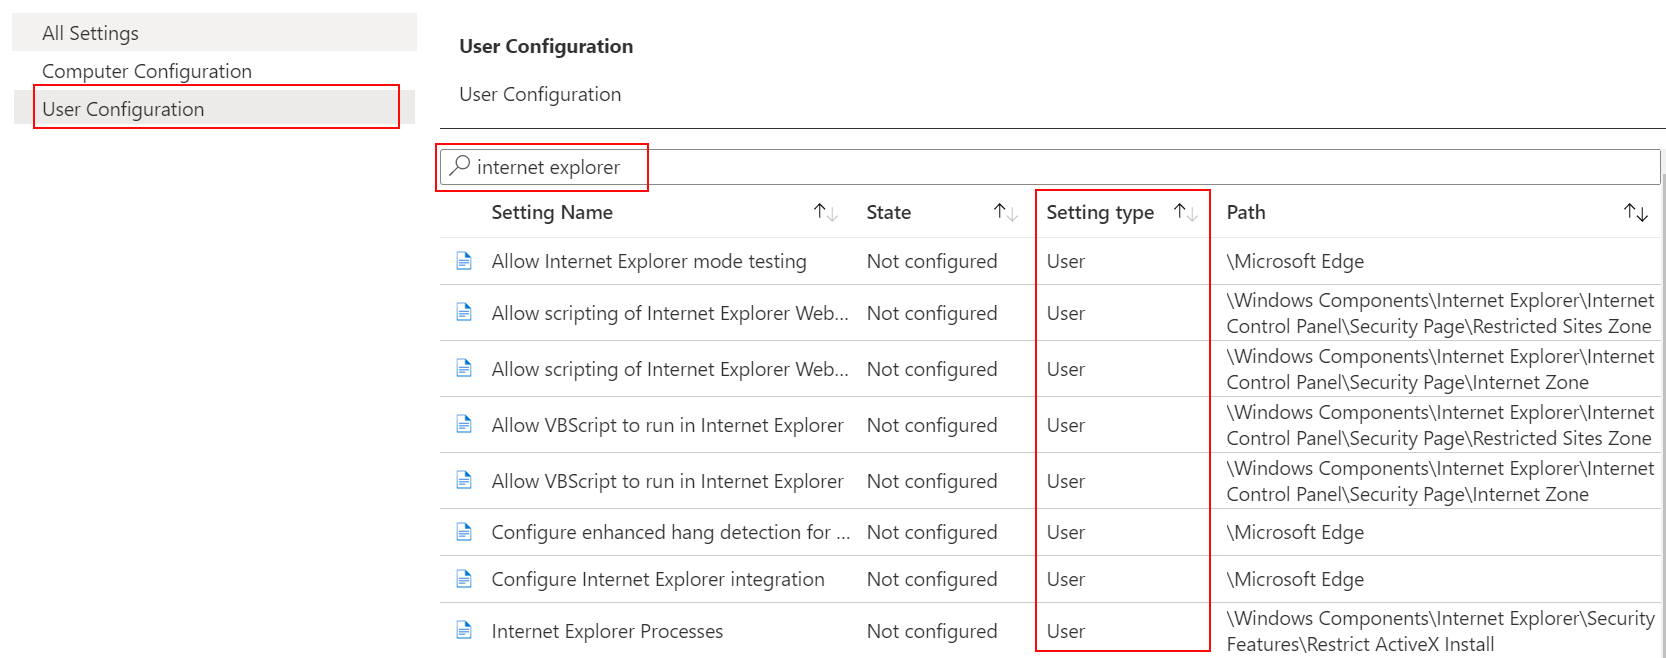 Schermopname van de ADMX-sjabloon waarin u **Gebruikersconfiguratie** selecteert en internet explorer zoekt of filtert in Microsoft Intune.